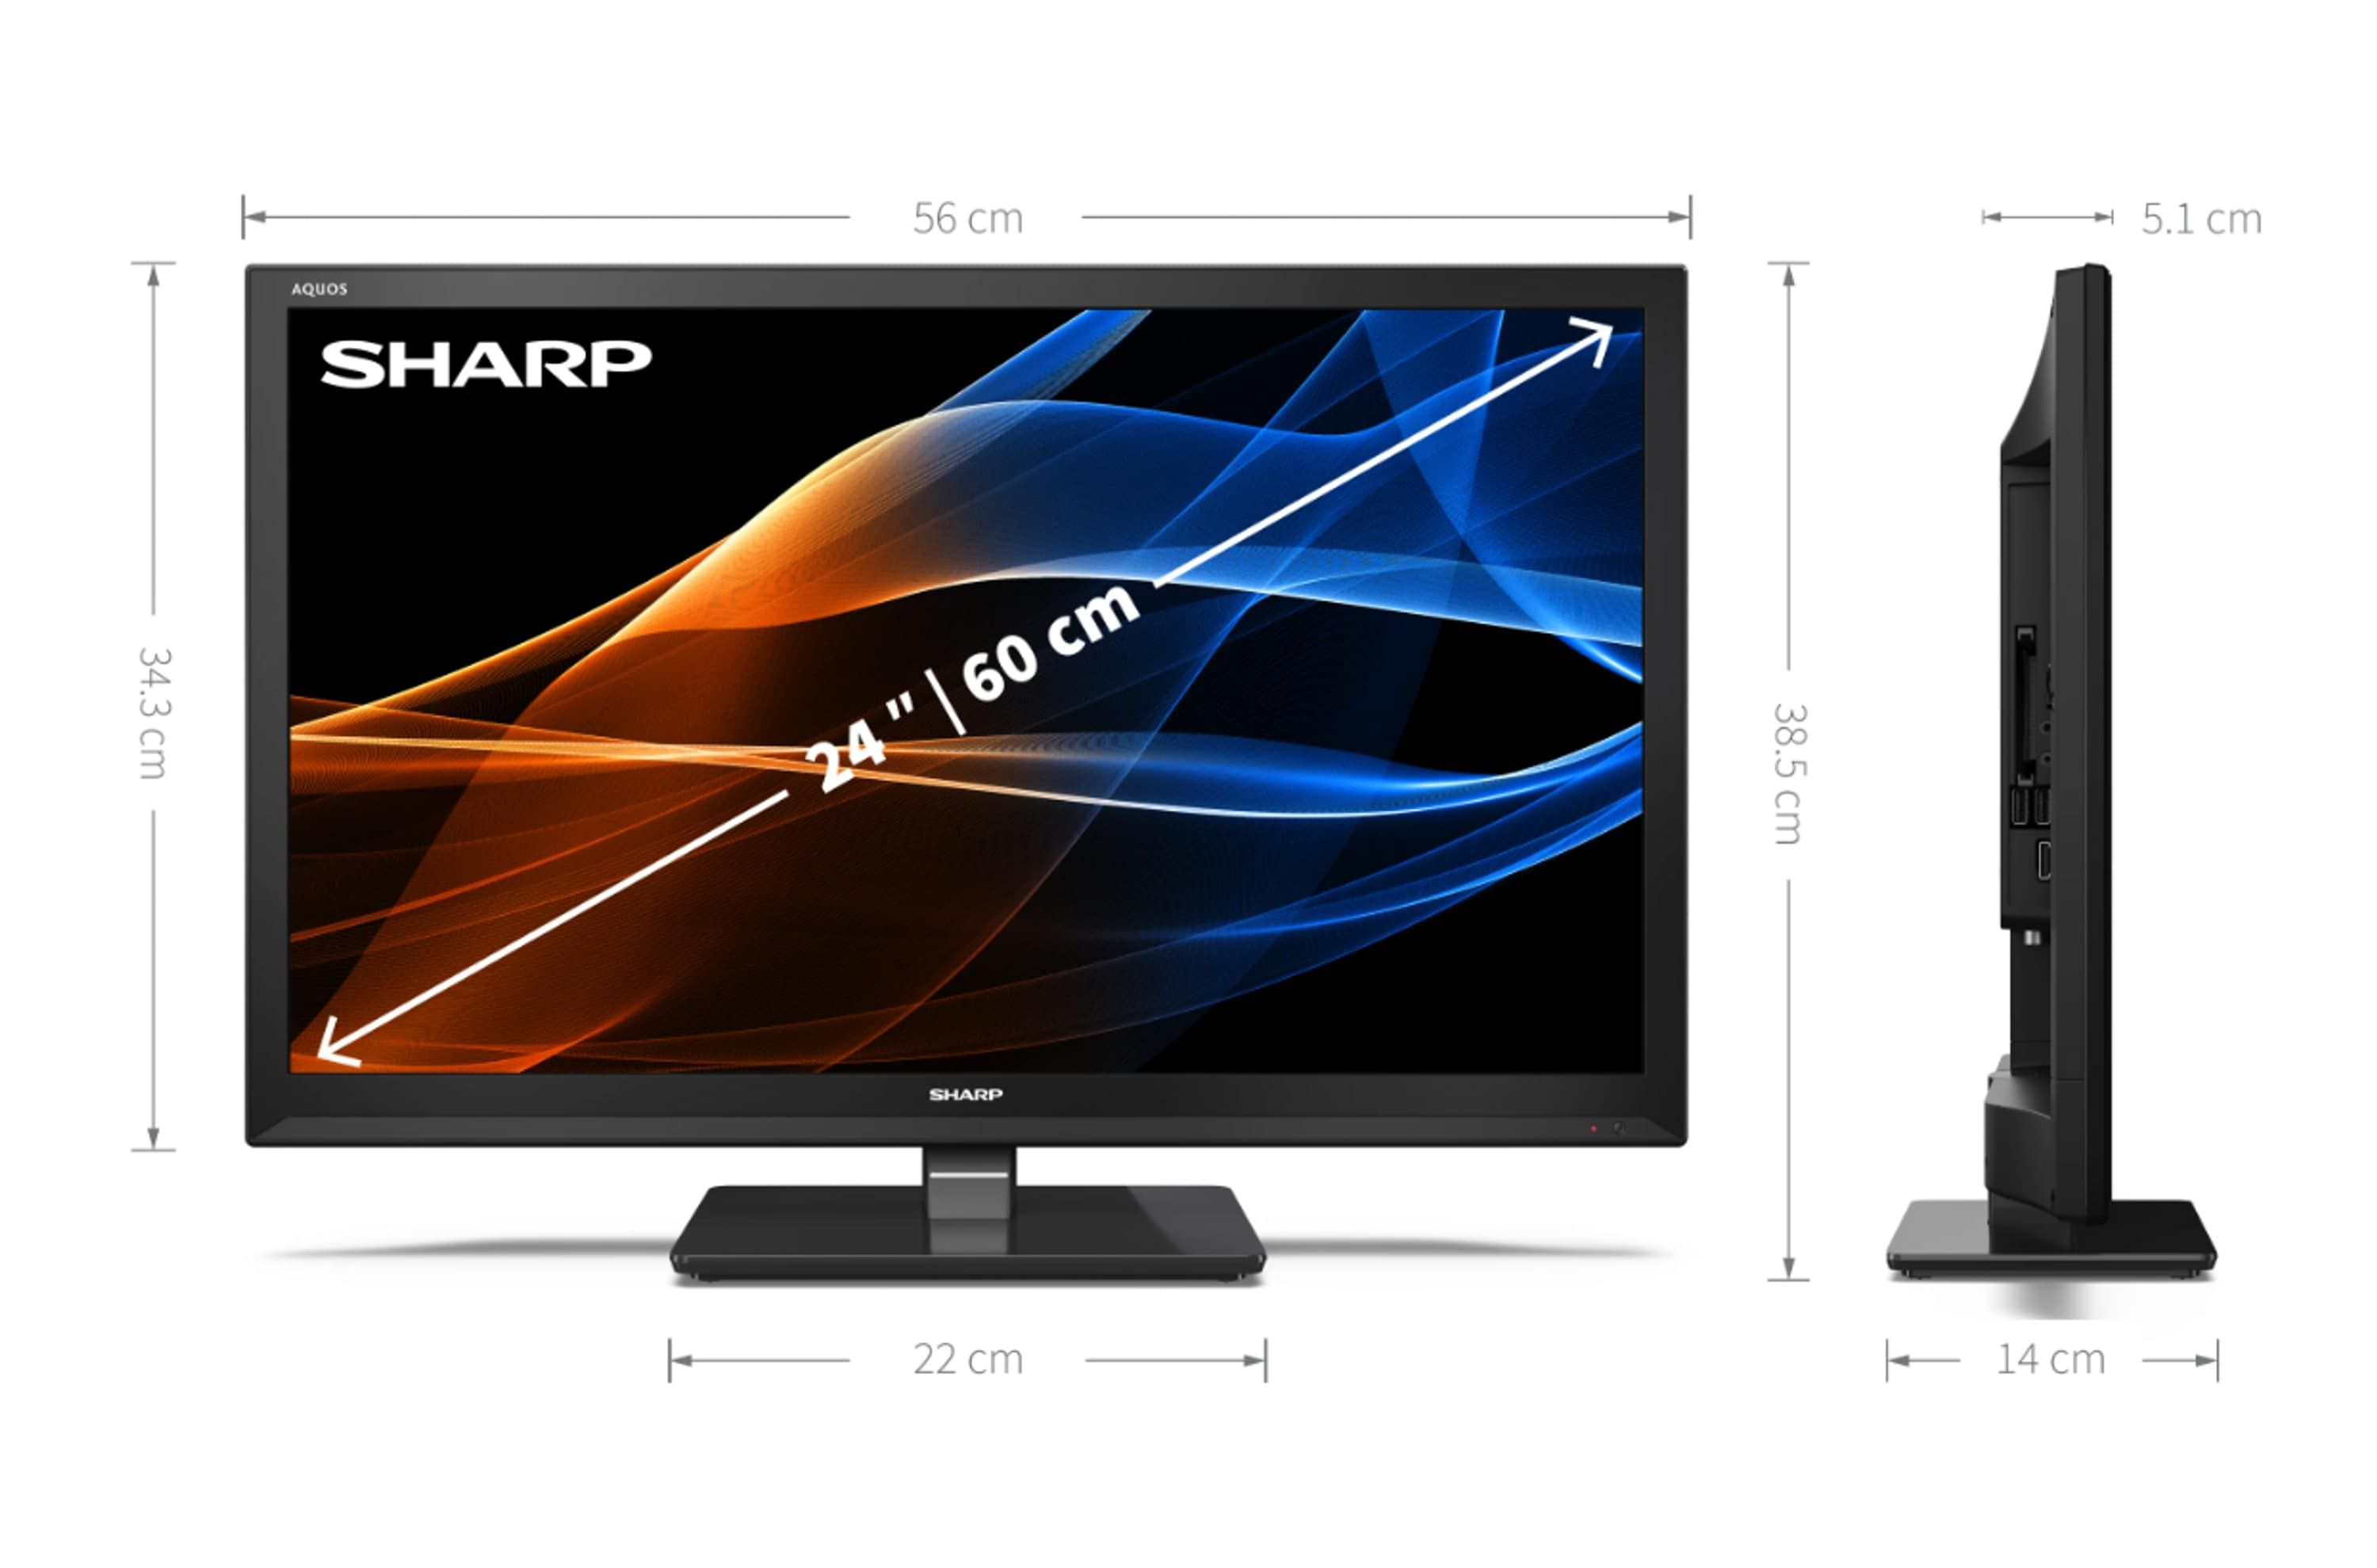 SHARP 24EA3E LED TV (Flat, 60 cm, HD-ready) Zoll 24 